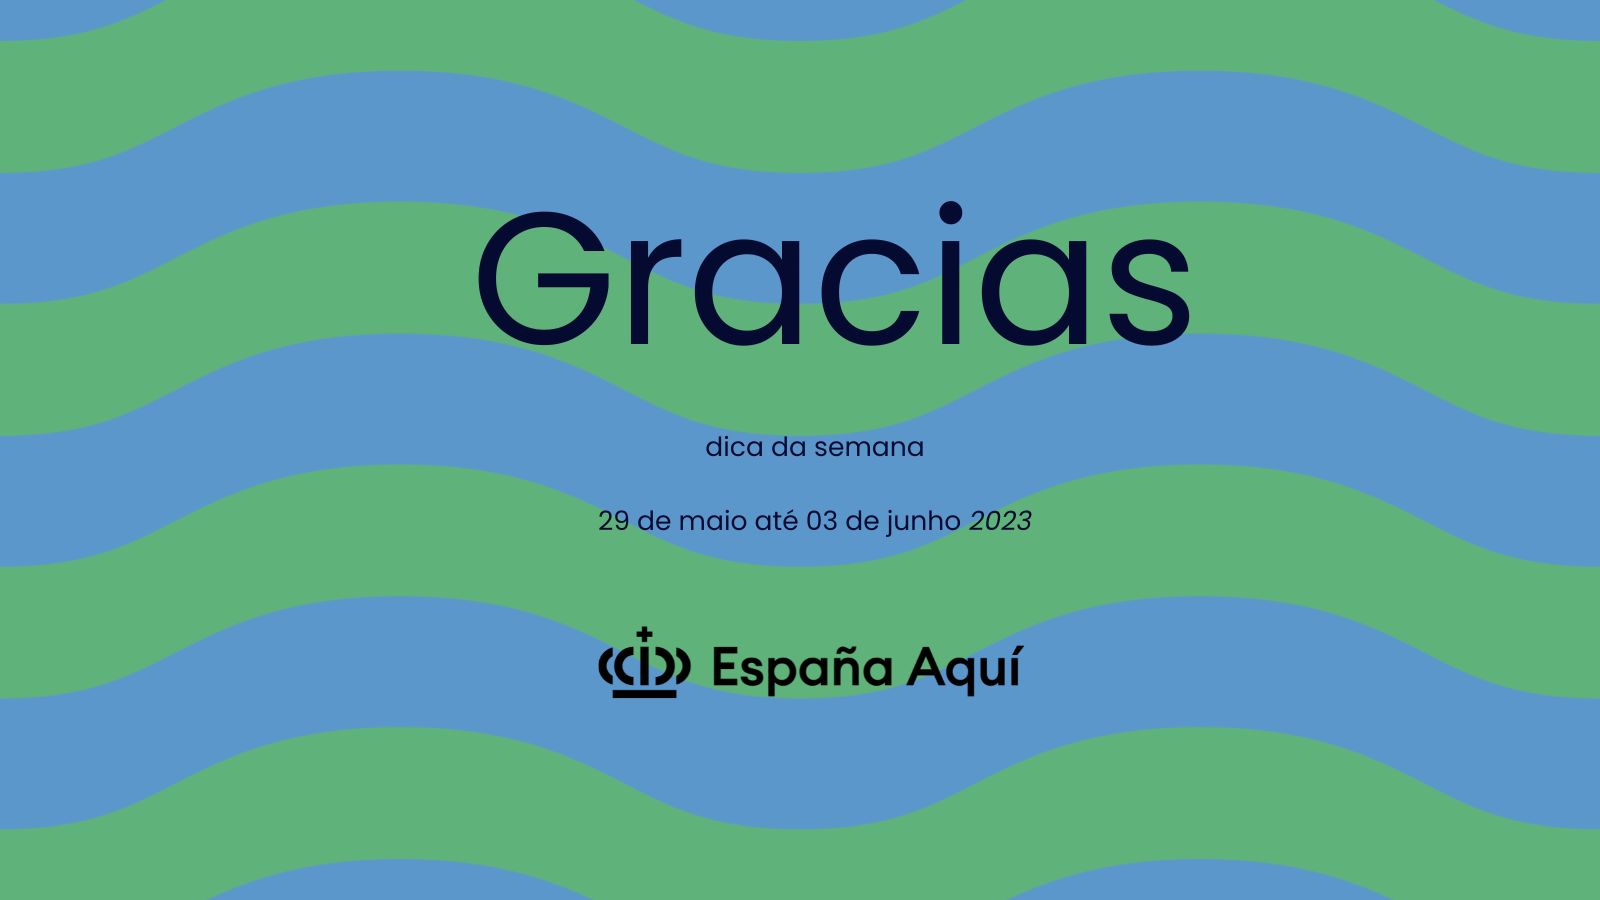 https://www.espanaaqui.com.br/pdf/2023/maio/Dica%20da%20semana.%20Gracias.jpg